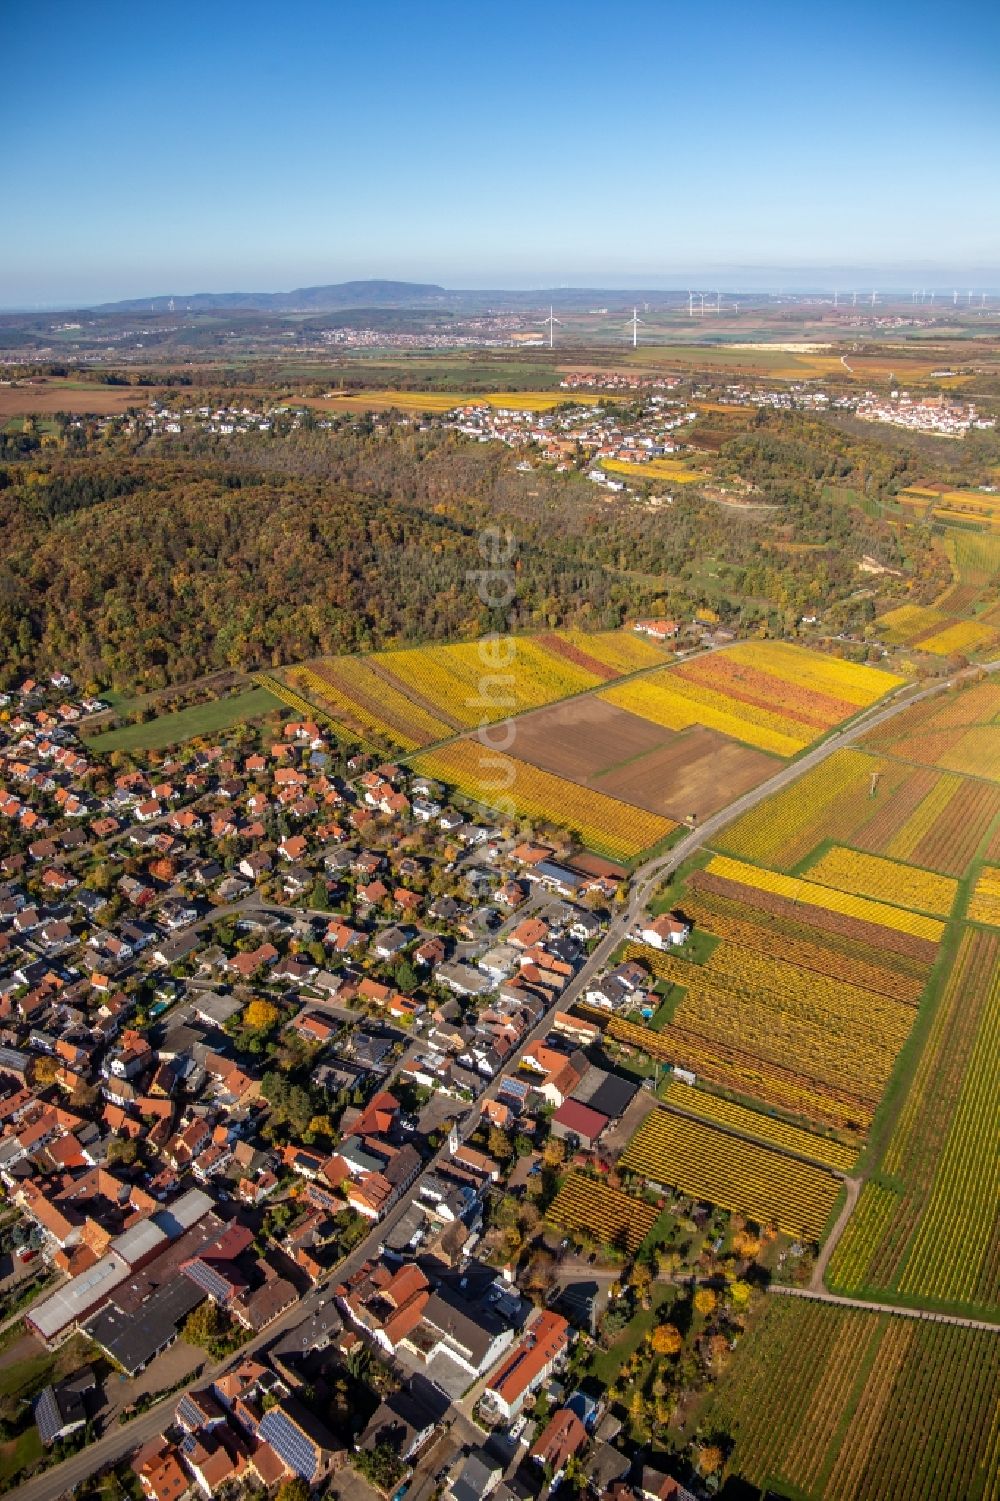 Luftbild Bobenheim am Berg - Dorfsiedlung am Weinbaugebiet in Bobenheim am Berg im Bundesland Rheinland-Pfalz, Deutschland